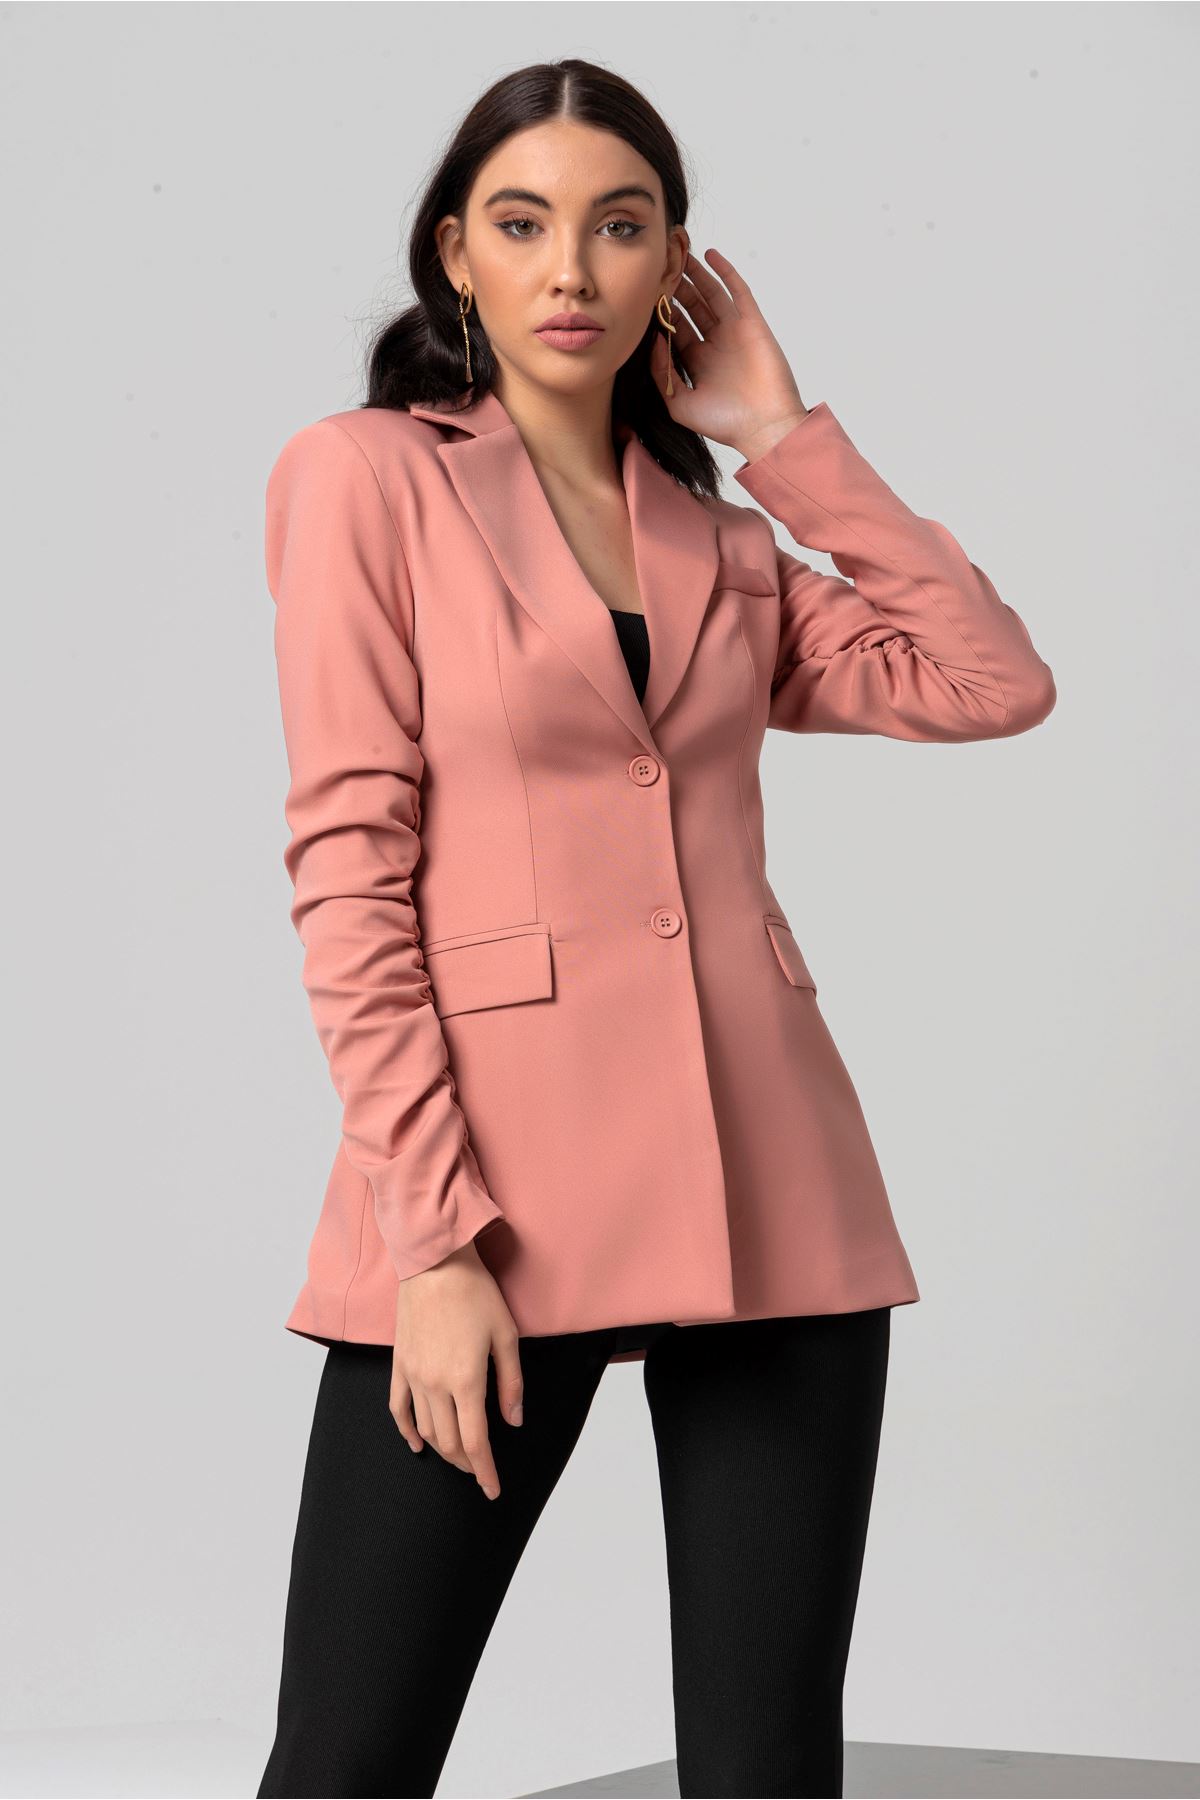 полиэстер ткань ревер воротник джоггеры женский пиджак - Светло розовый